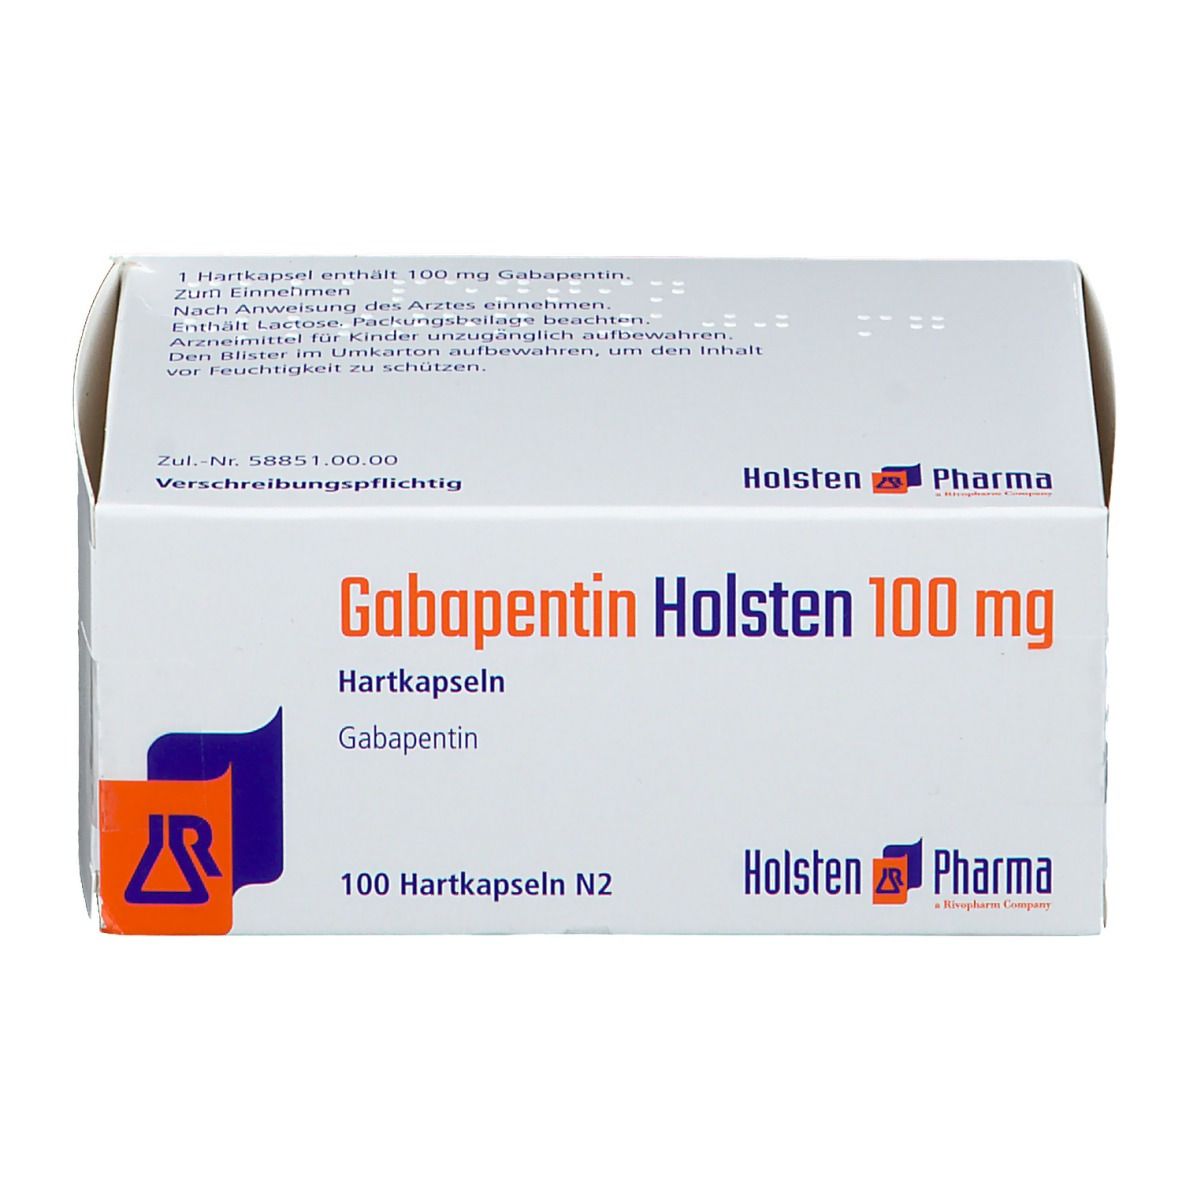 Gabapentin Holsten 100 mg